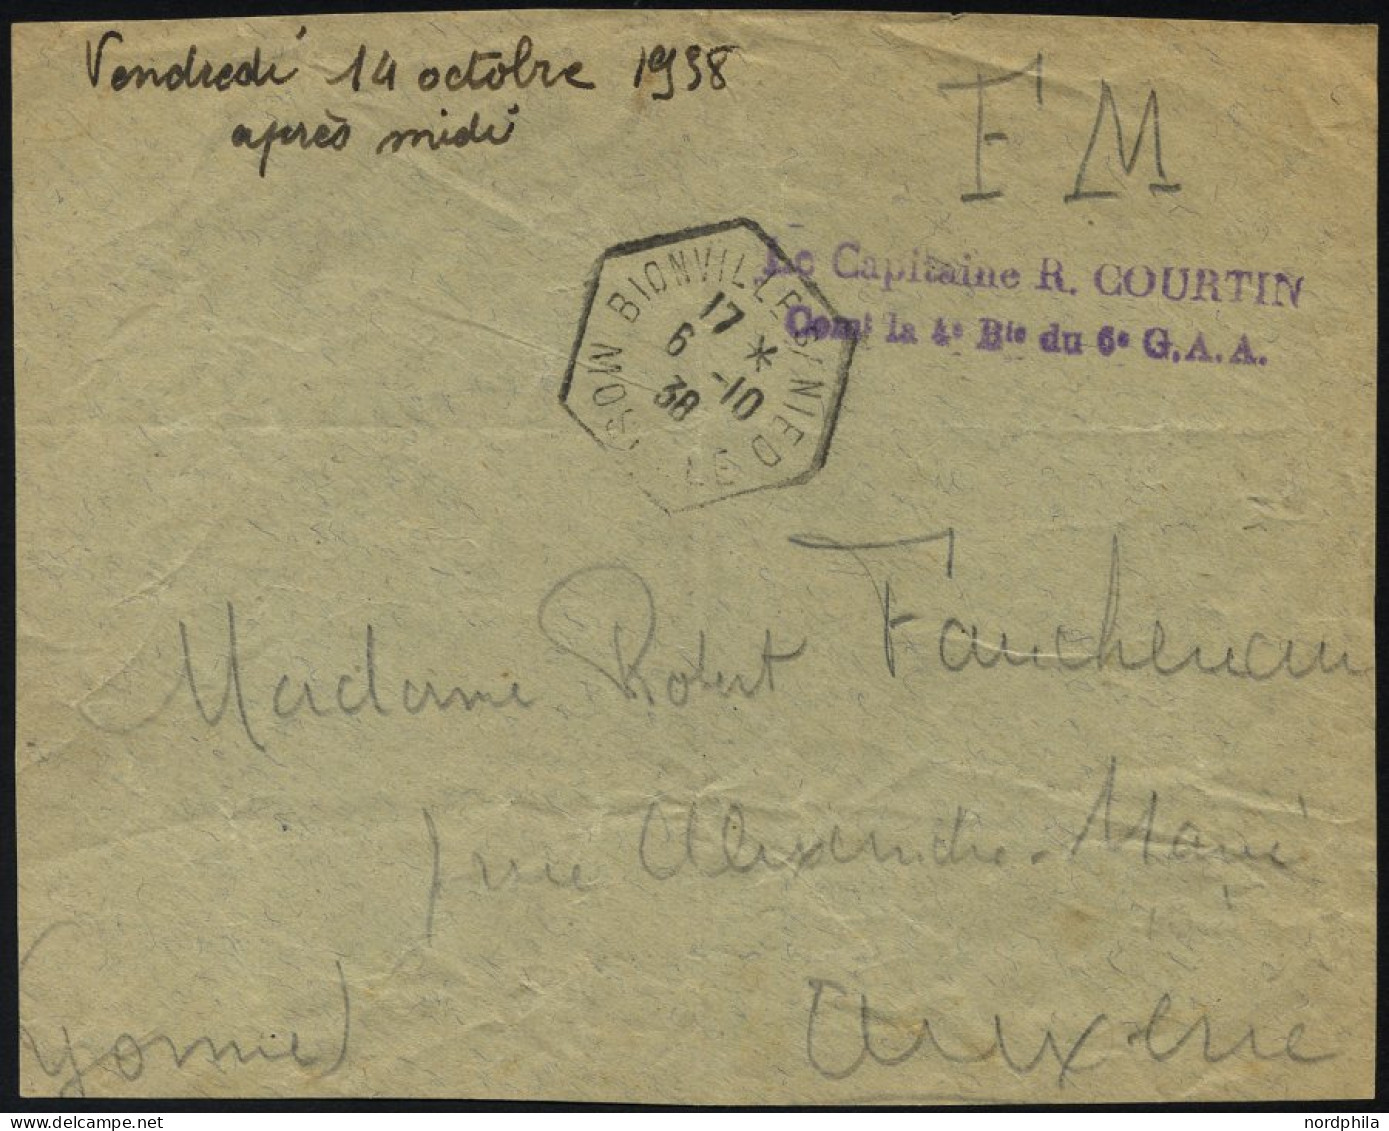 FRANKREICH FELDPOST 1938, Violetter Absenderstempel Le Capitaine R. Courtin, Con La 4 D Du 6 G.A.A. Auf Briefvorderseite - Guerre De 1939-45